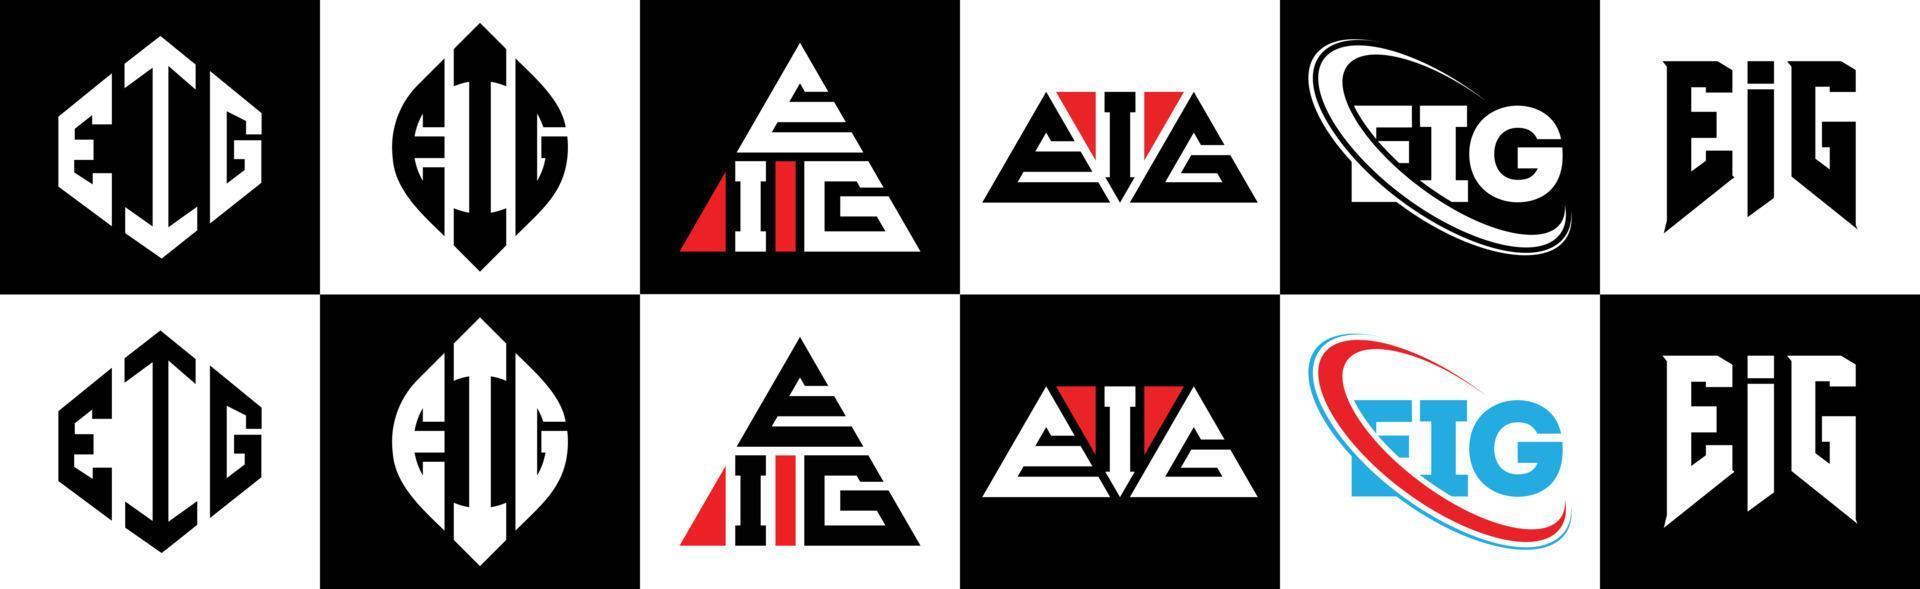 Eig-Buchstaben-Logo-Design in sechs Stilen. ei polygon, kreis, dreieck, sechseck, flacher und einfacher stil mit schwarz-weißem buchstabenlogo in einer zeichenfläche. ei minimalistisches und klassisches Logo vektor